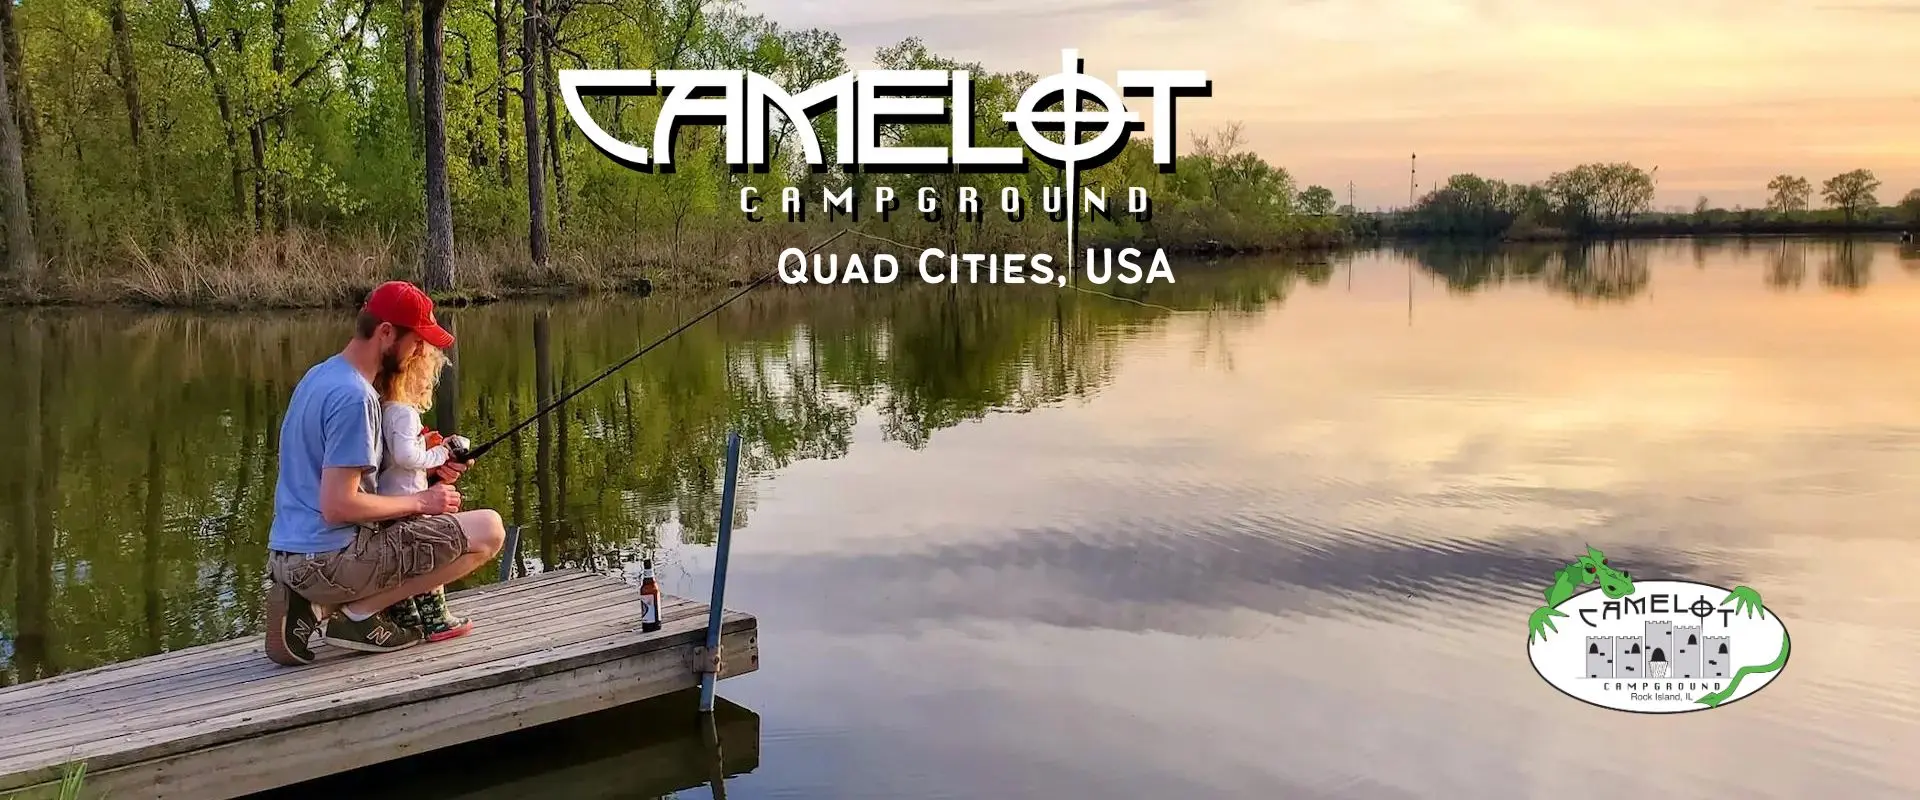 Camelot Campground Quad Cities USA